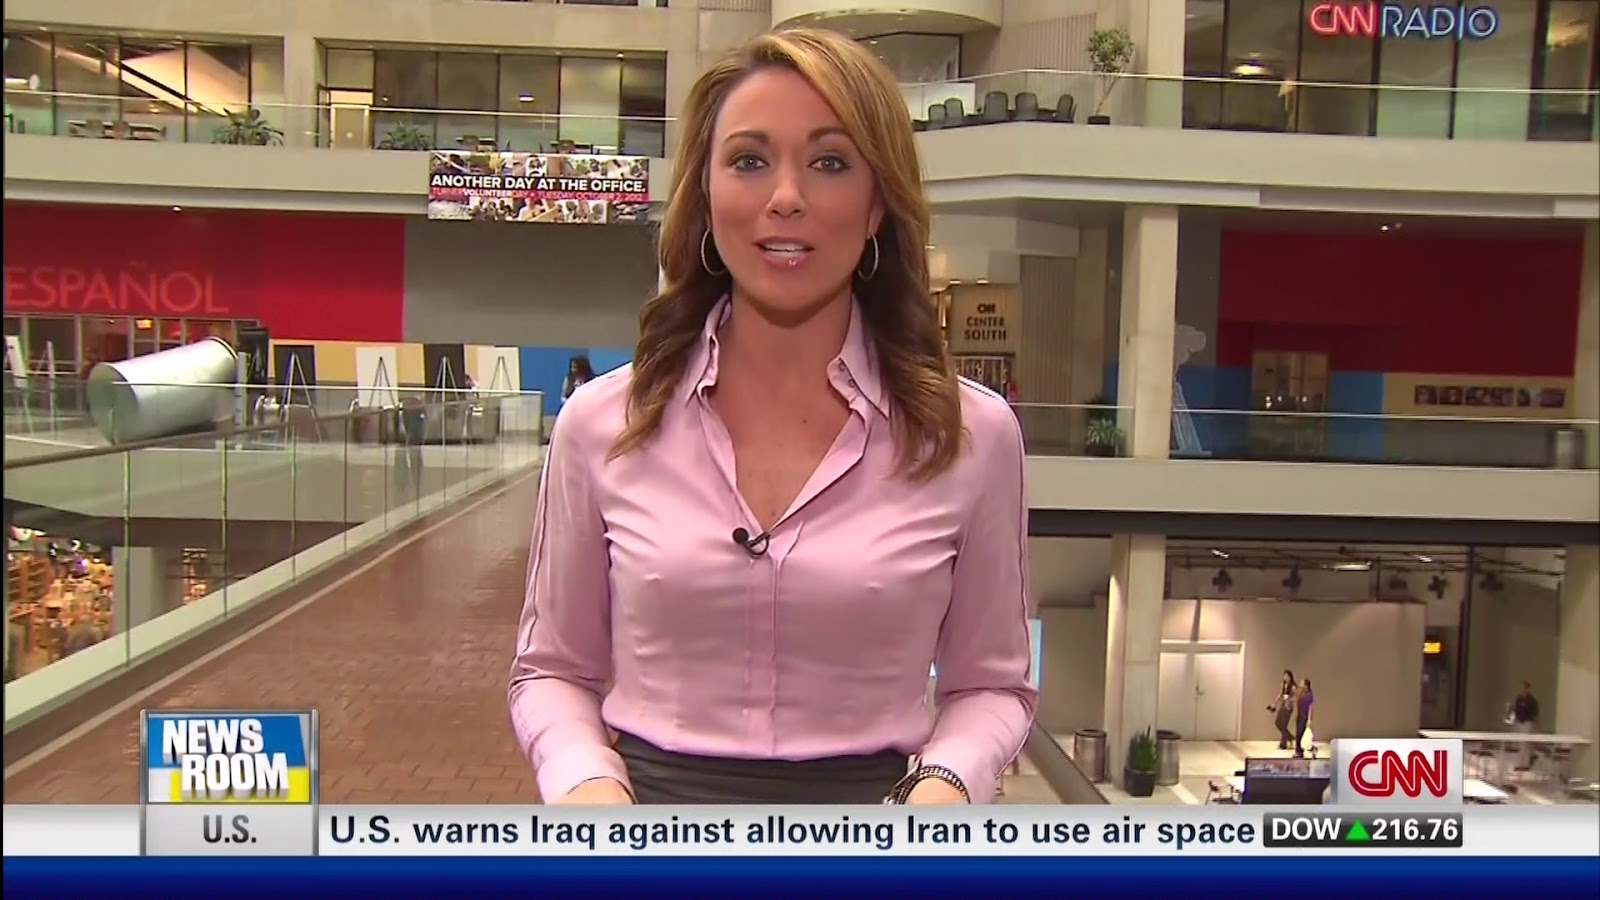 Very sexy girl news anchor